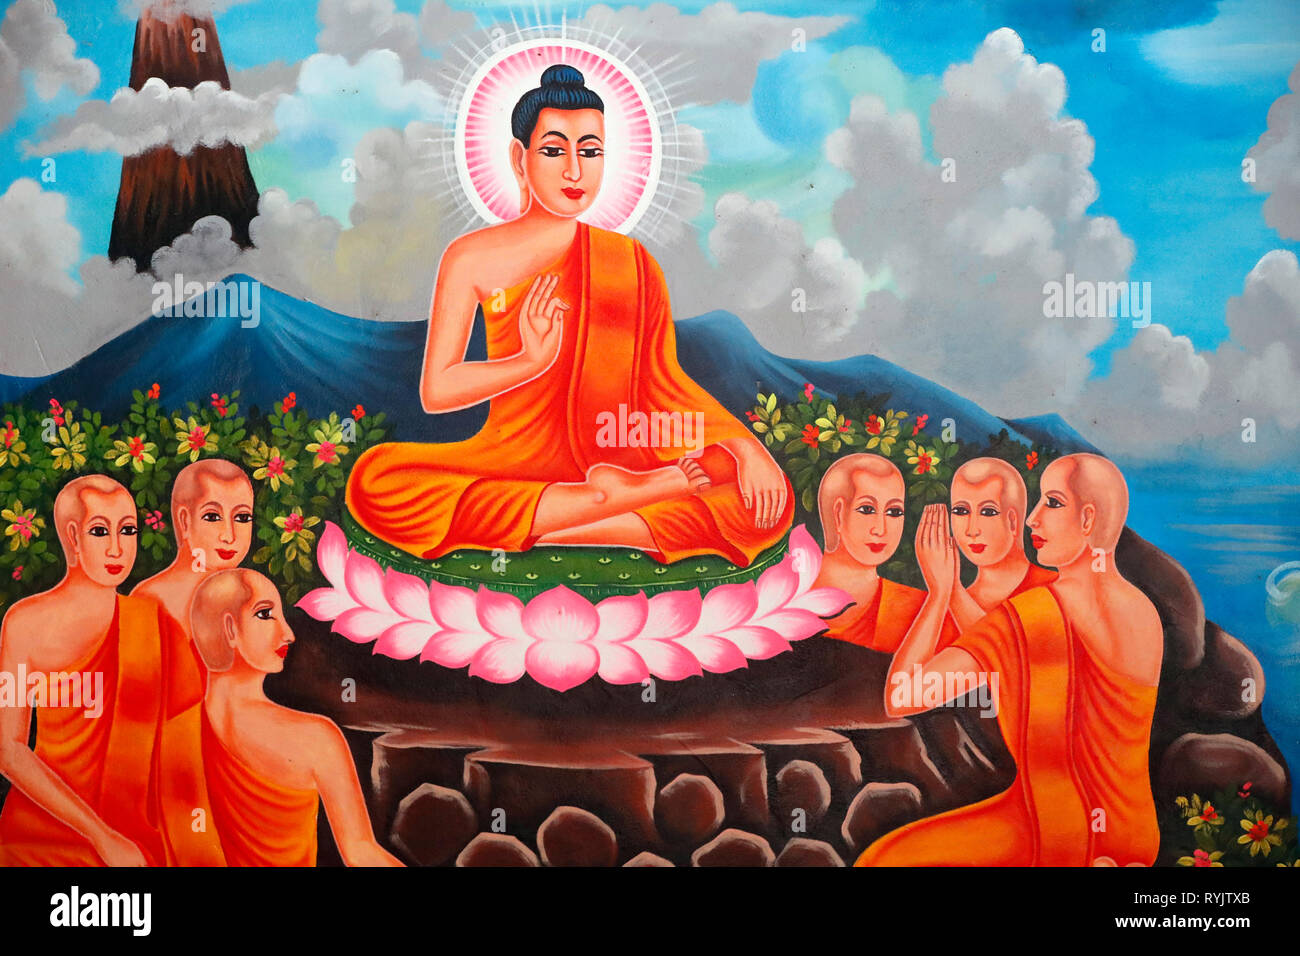 La vita del Buddha, Siddharta Gautama. Il Buddha con discepoli insegnando. Soc Po Lok tempio buddista. Chau Doc. Il Vietnam. Foto Stock